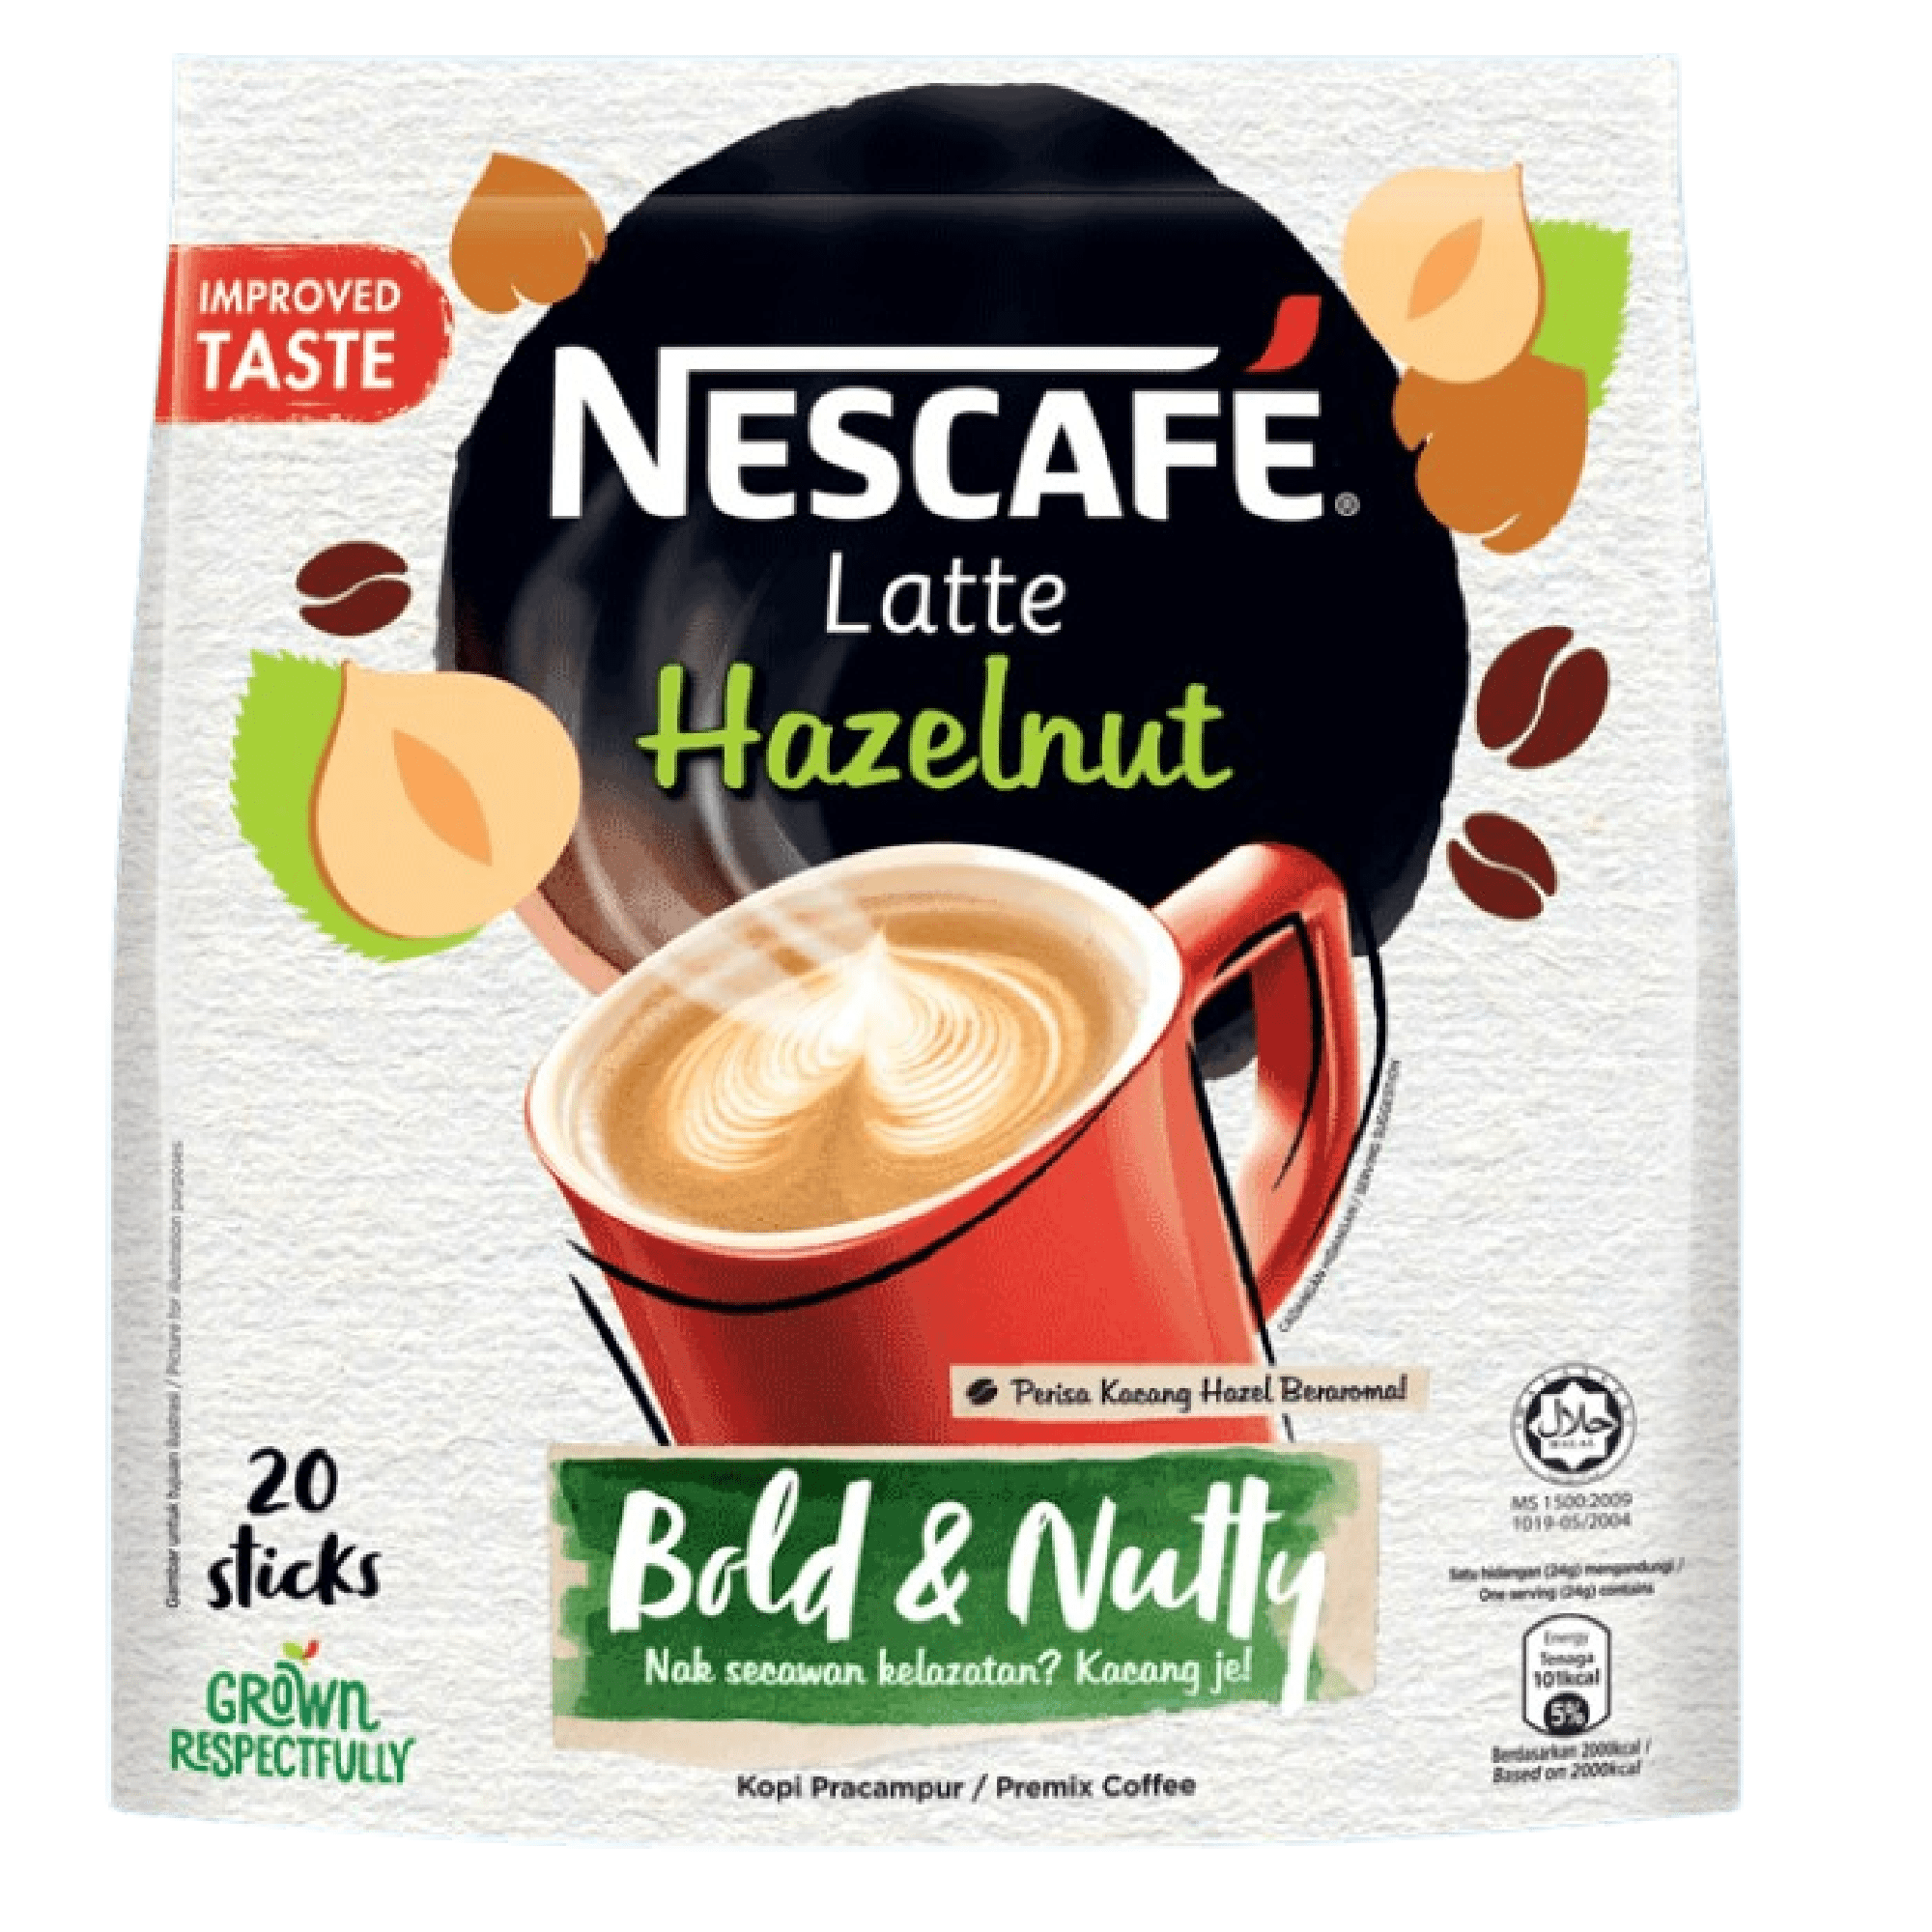 Nescafe Breakfast 3 In 1 Sachet 32g - Ovenfresh Bakery & Restuarant